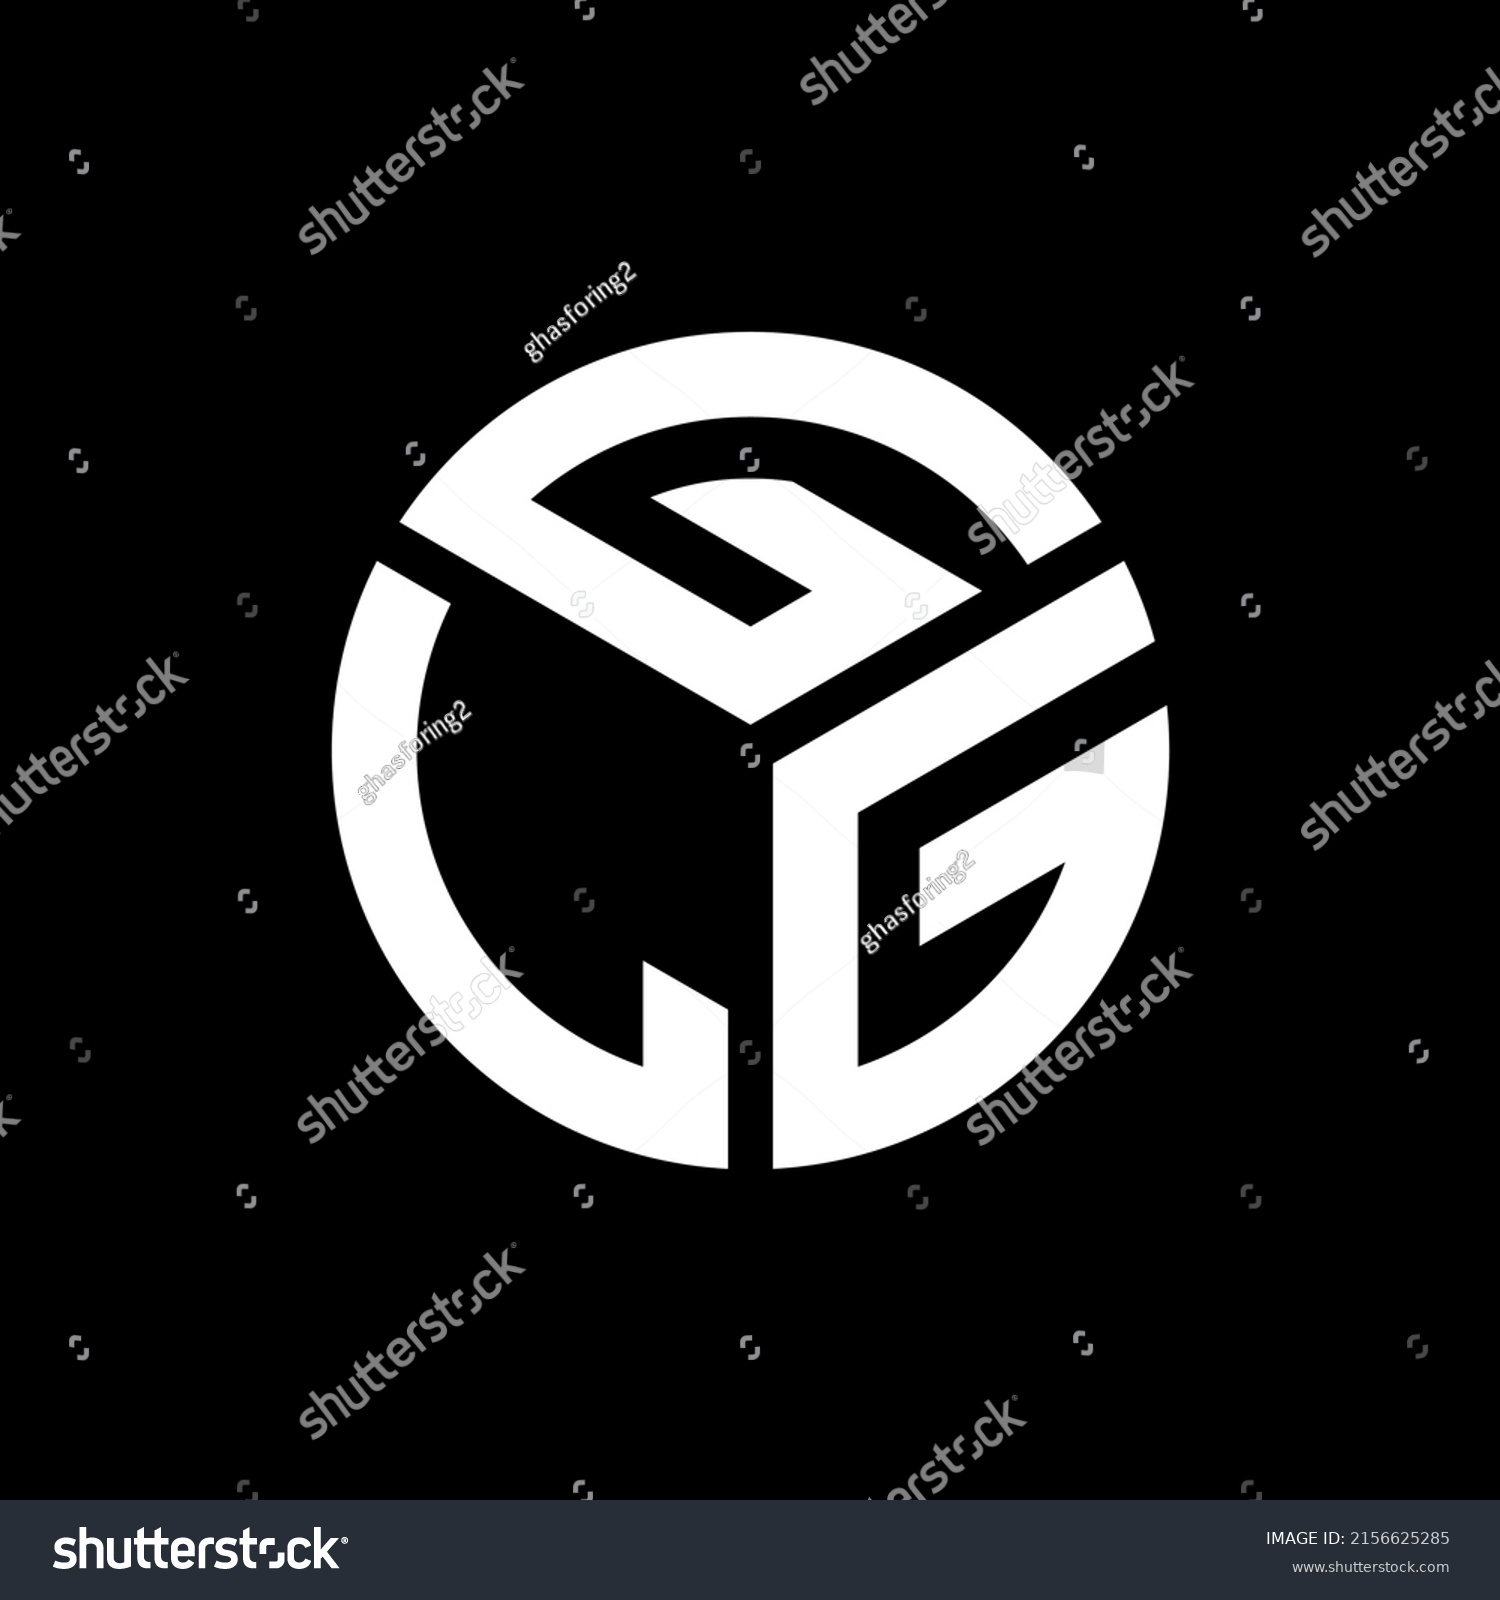 SVG of GLG letter logo design on black background. GLG creative initials letter logo concept. GLG letter design.
 svg